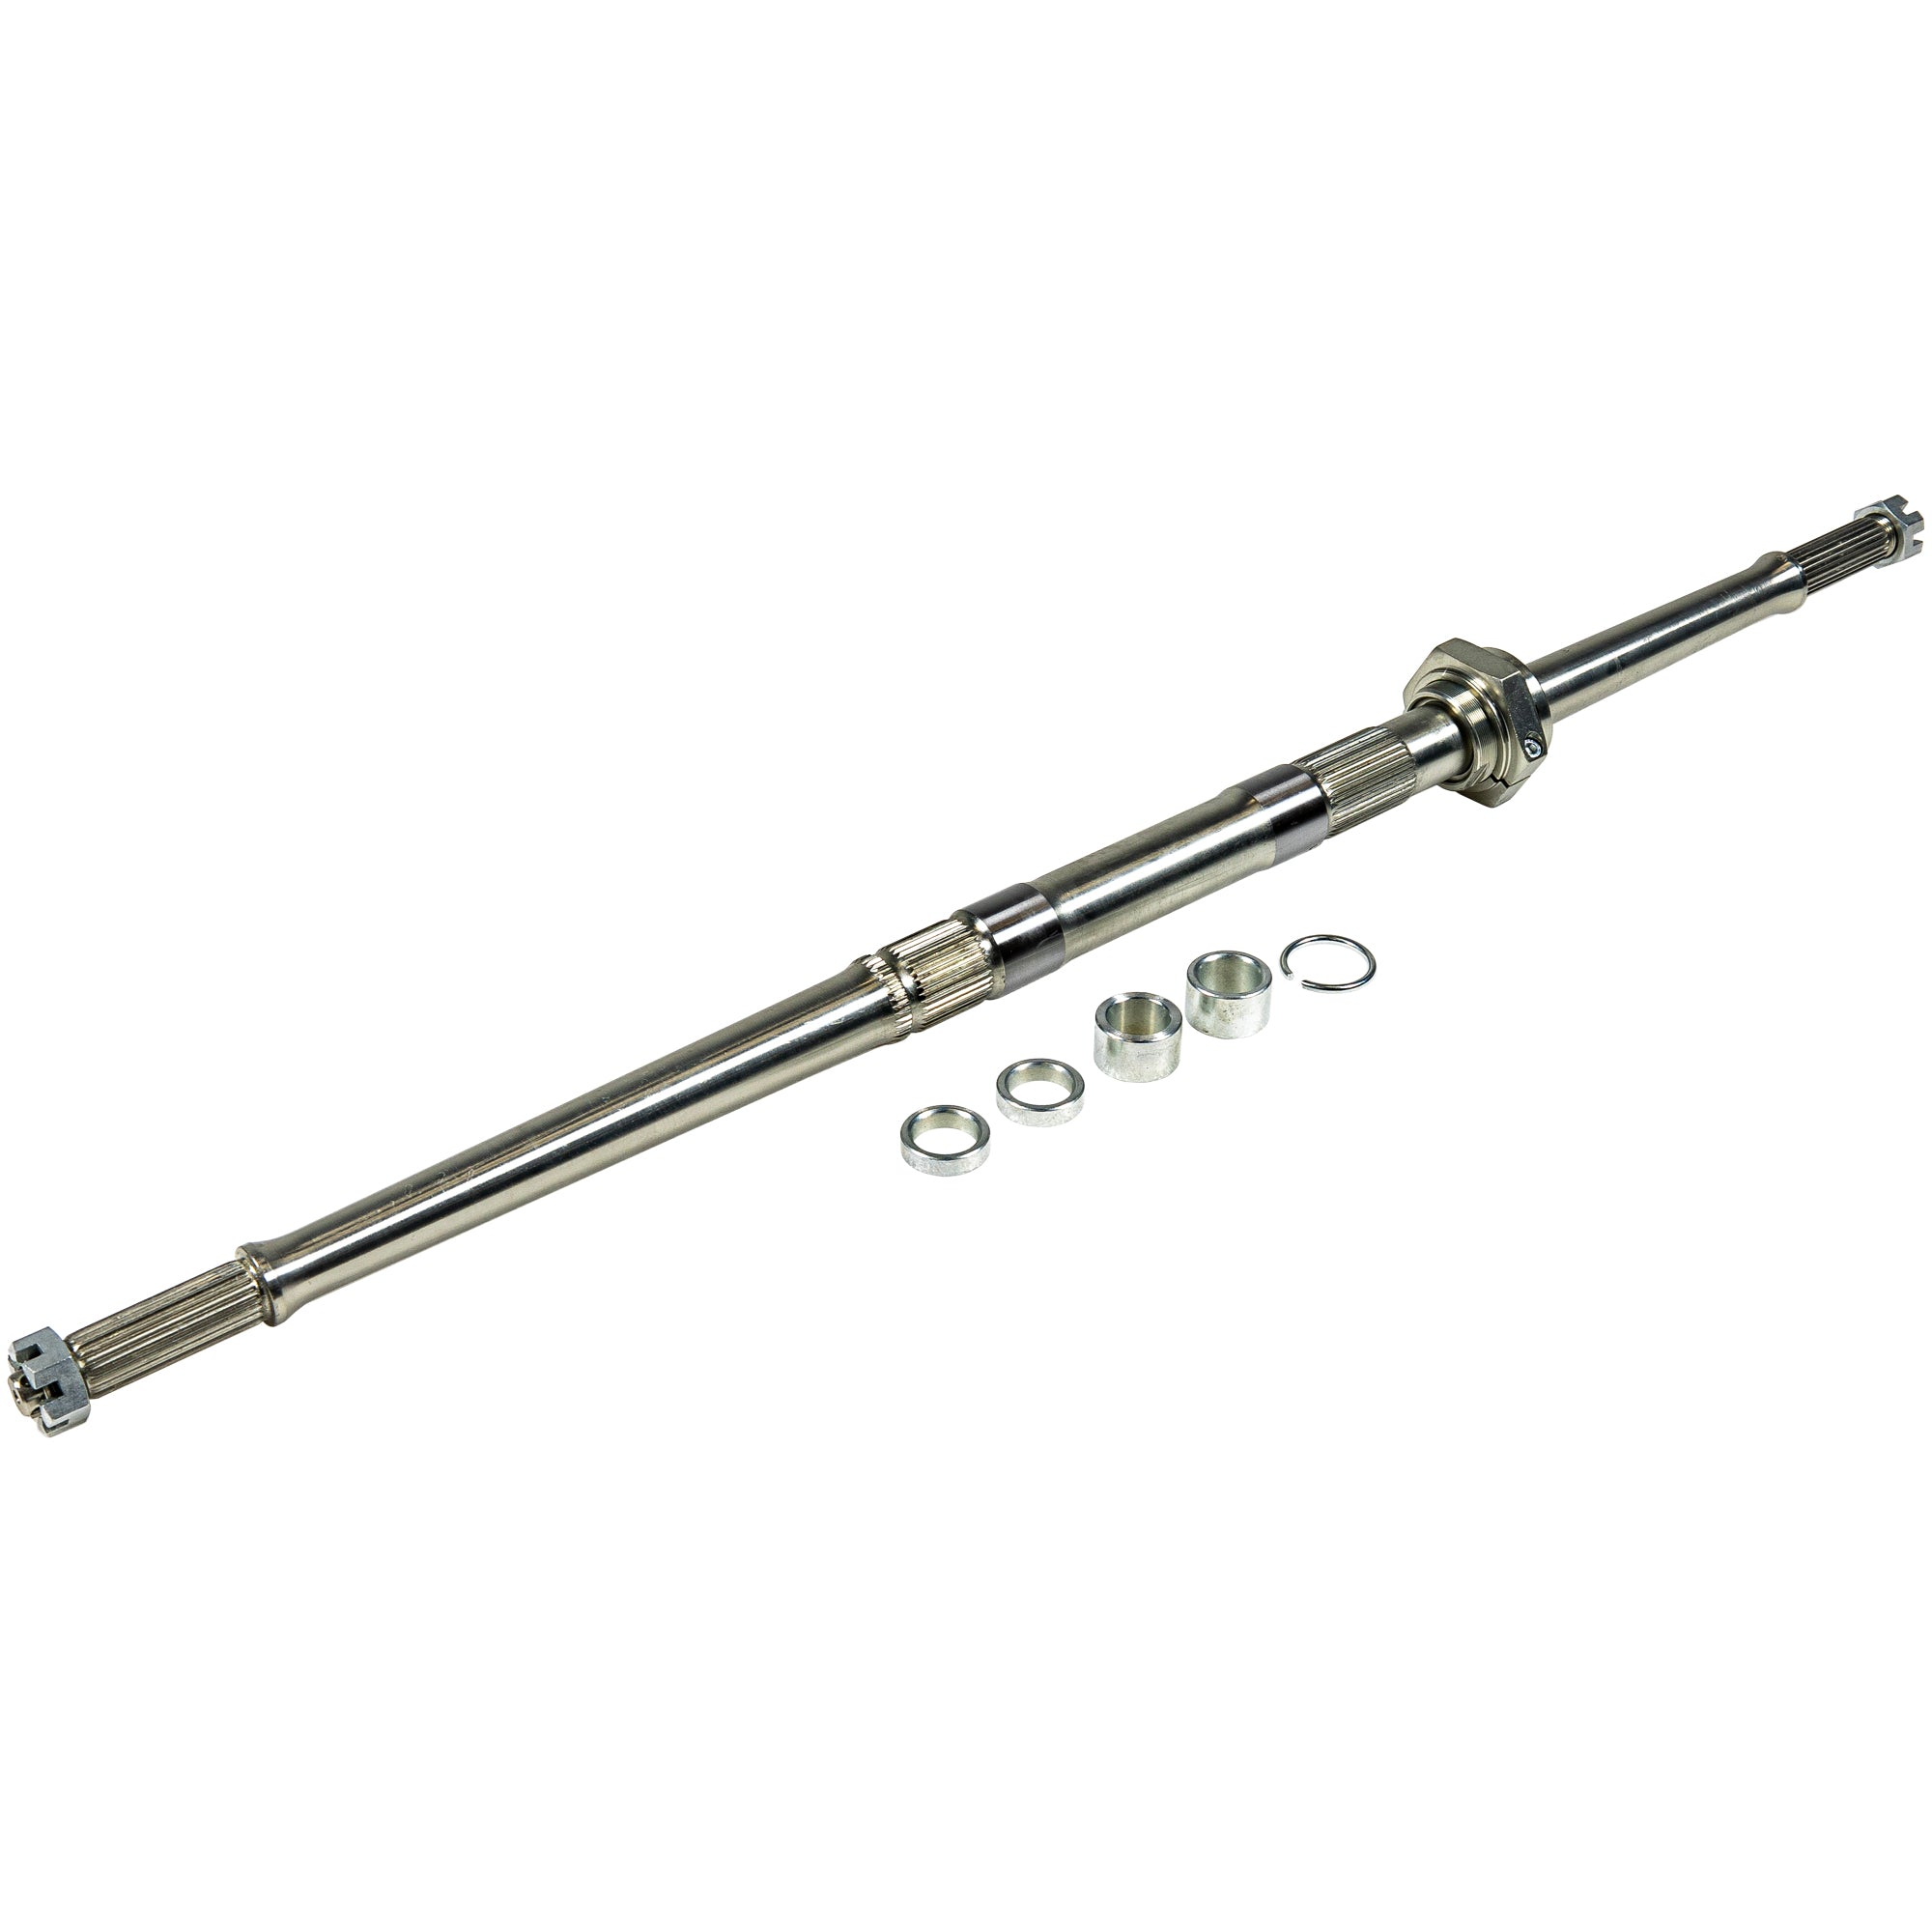 Adjustable Solid Rear Axle For Yamaha 5TG-25381-10-00 5TG-25381-00-00